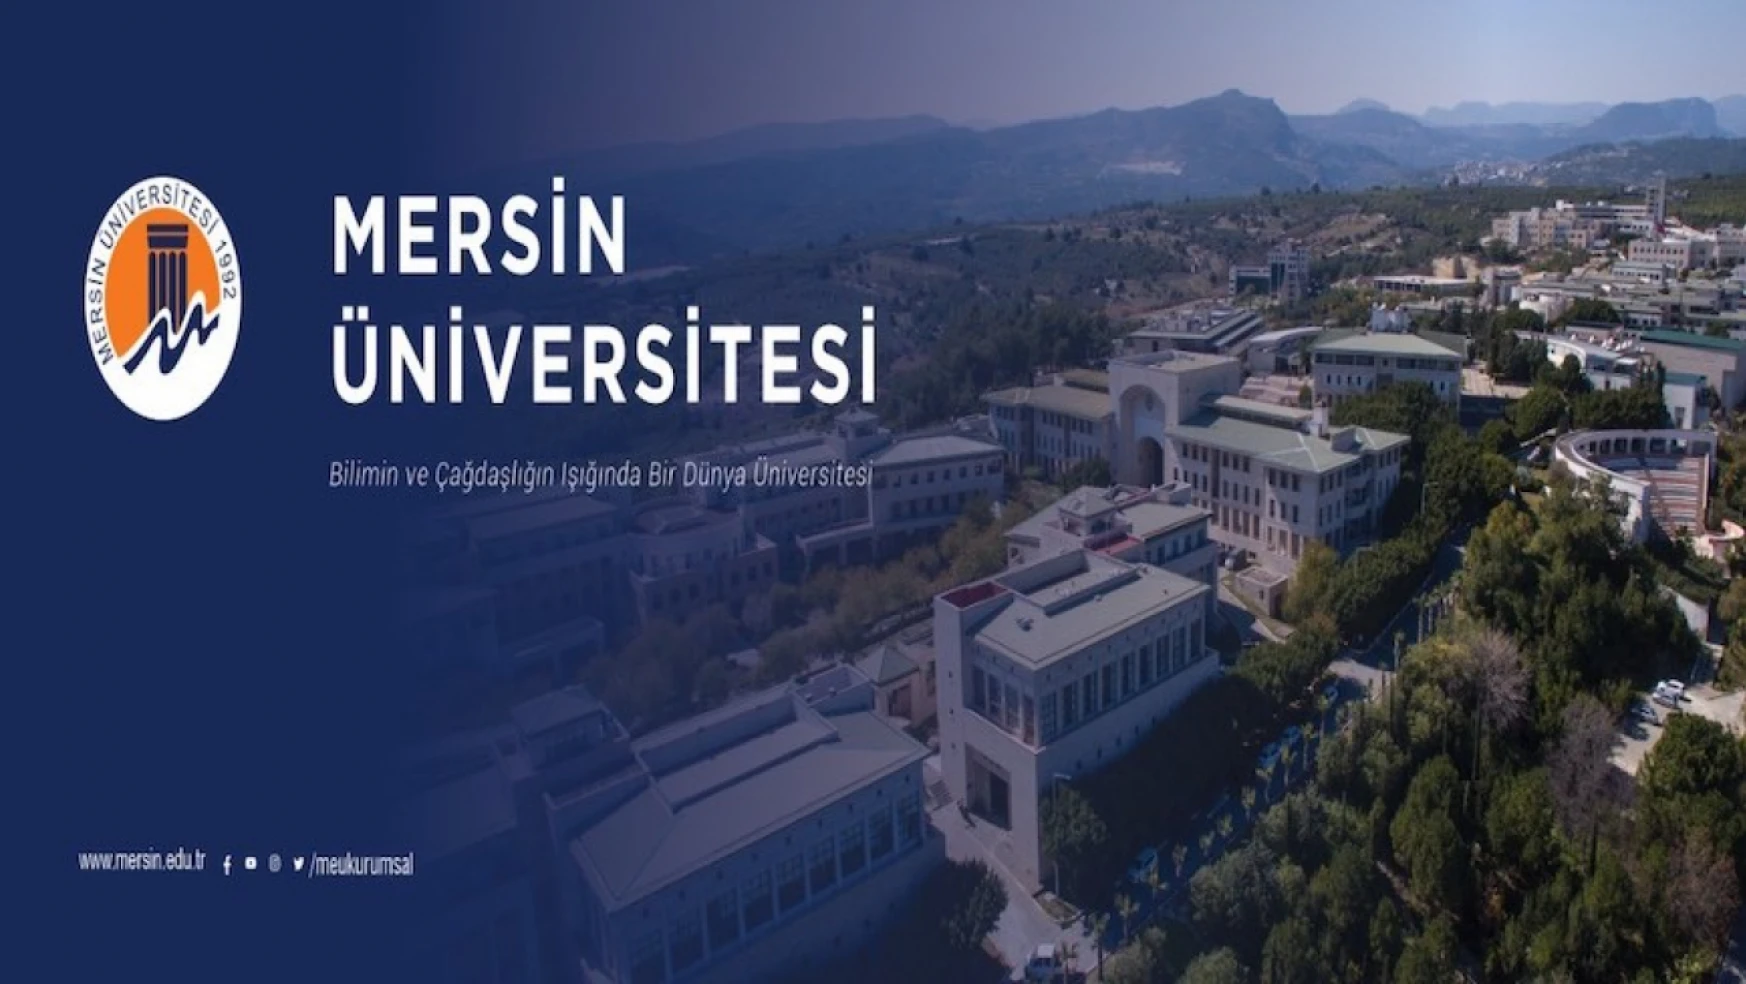 Mersin Üniversitesinden sözleşmeli personel alımı ilanı